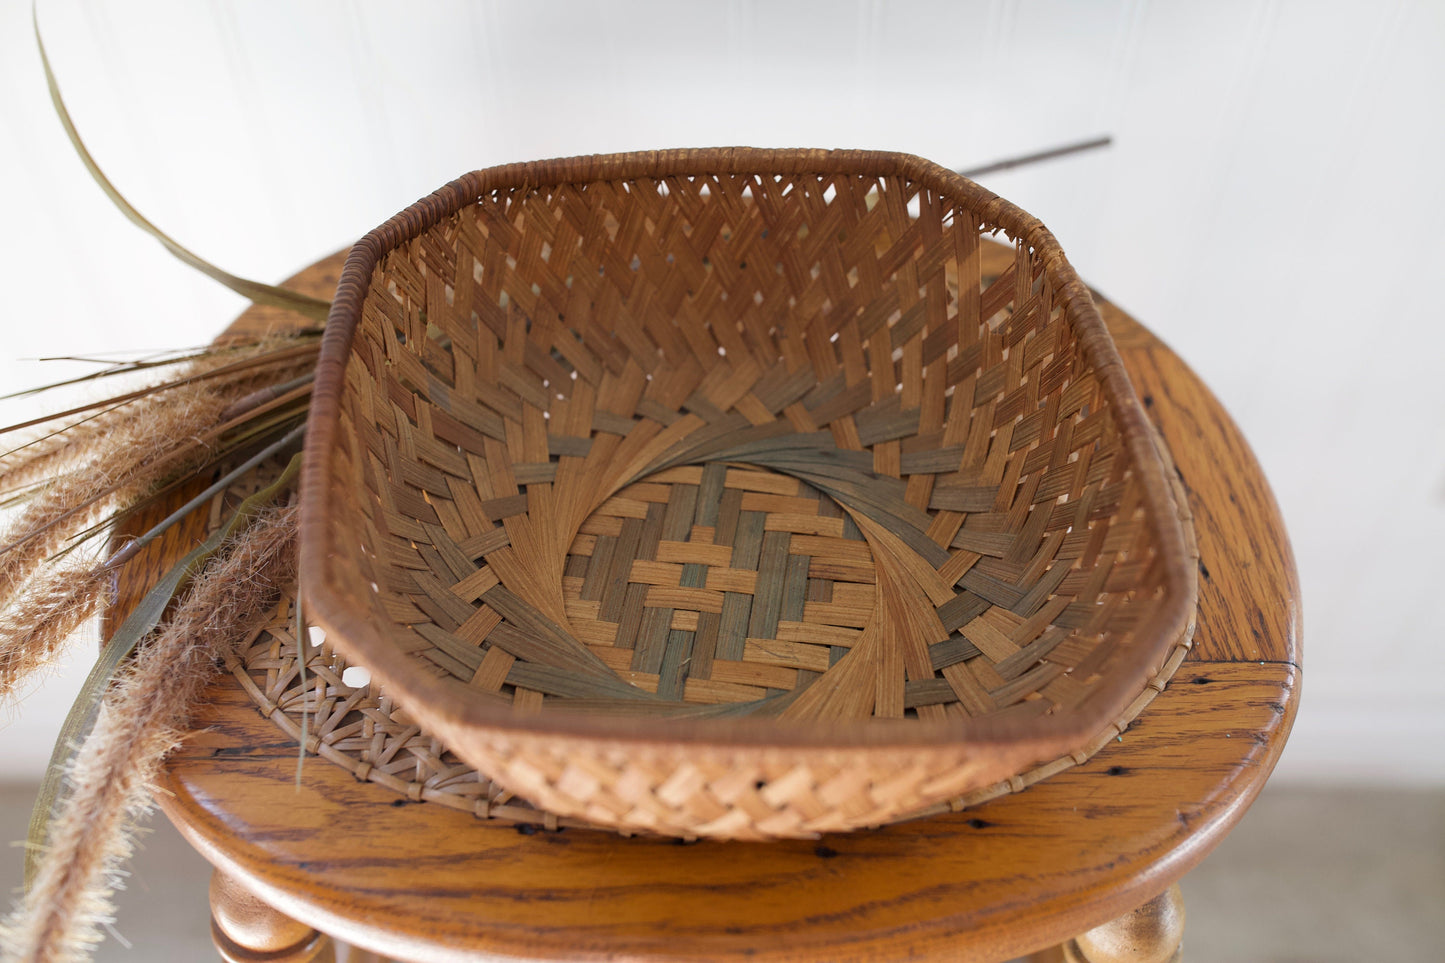 Vintage Woven Basket